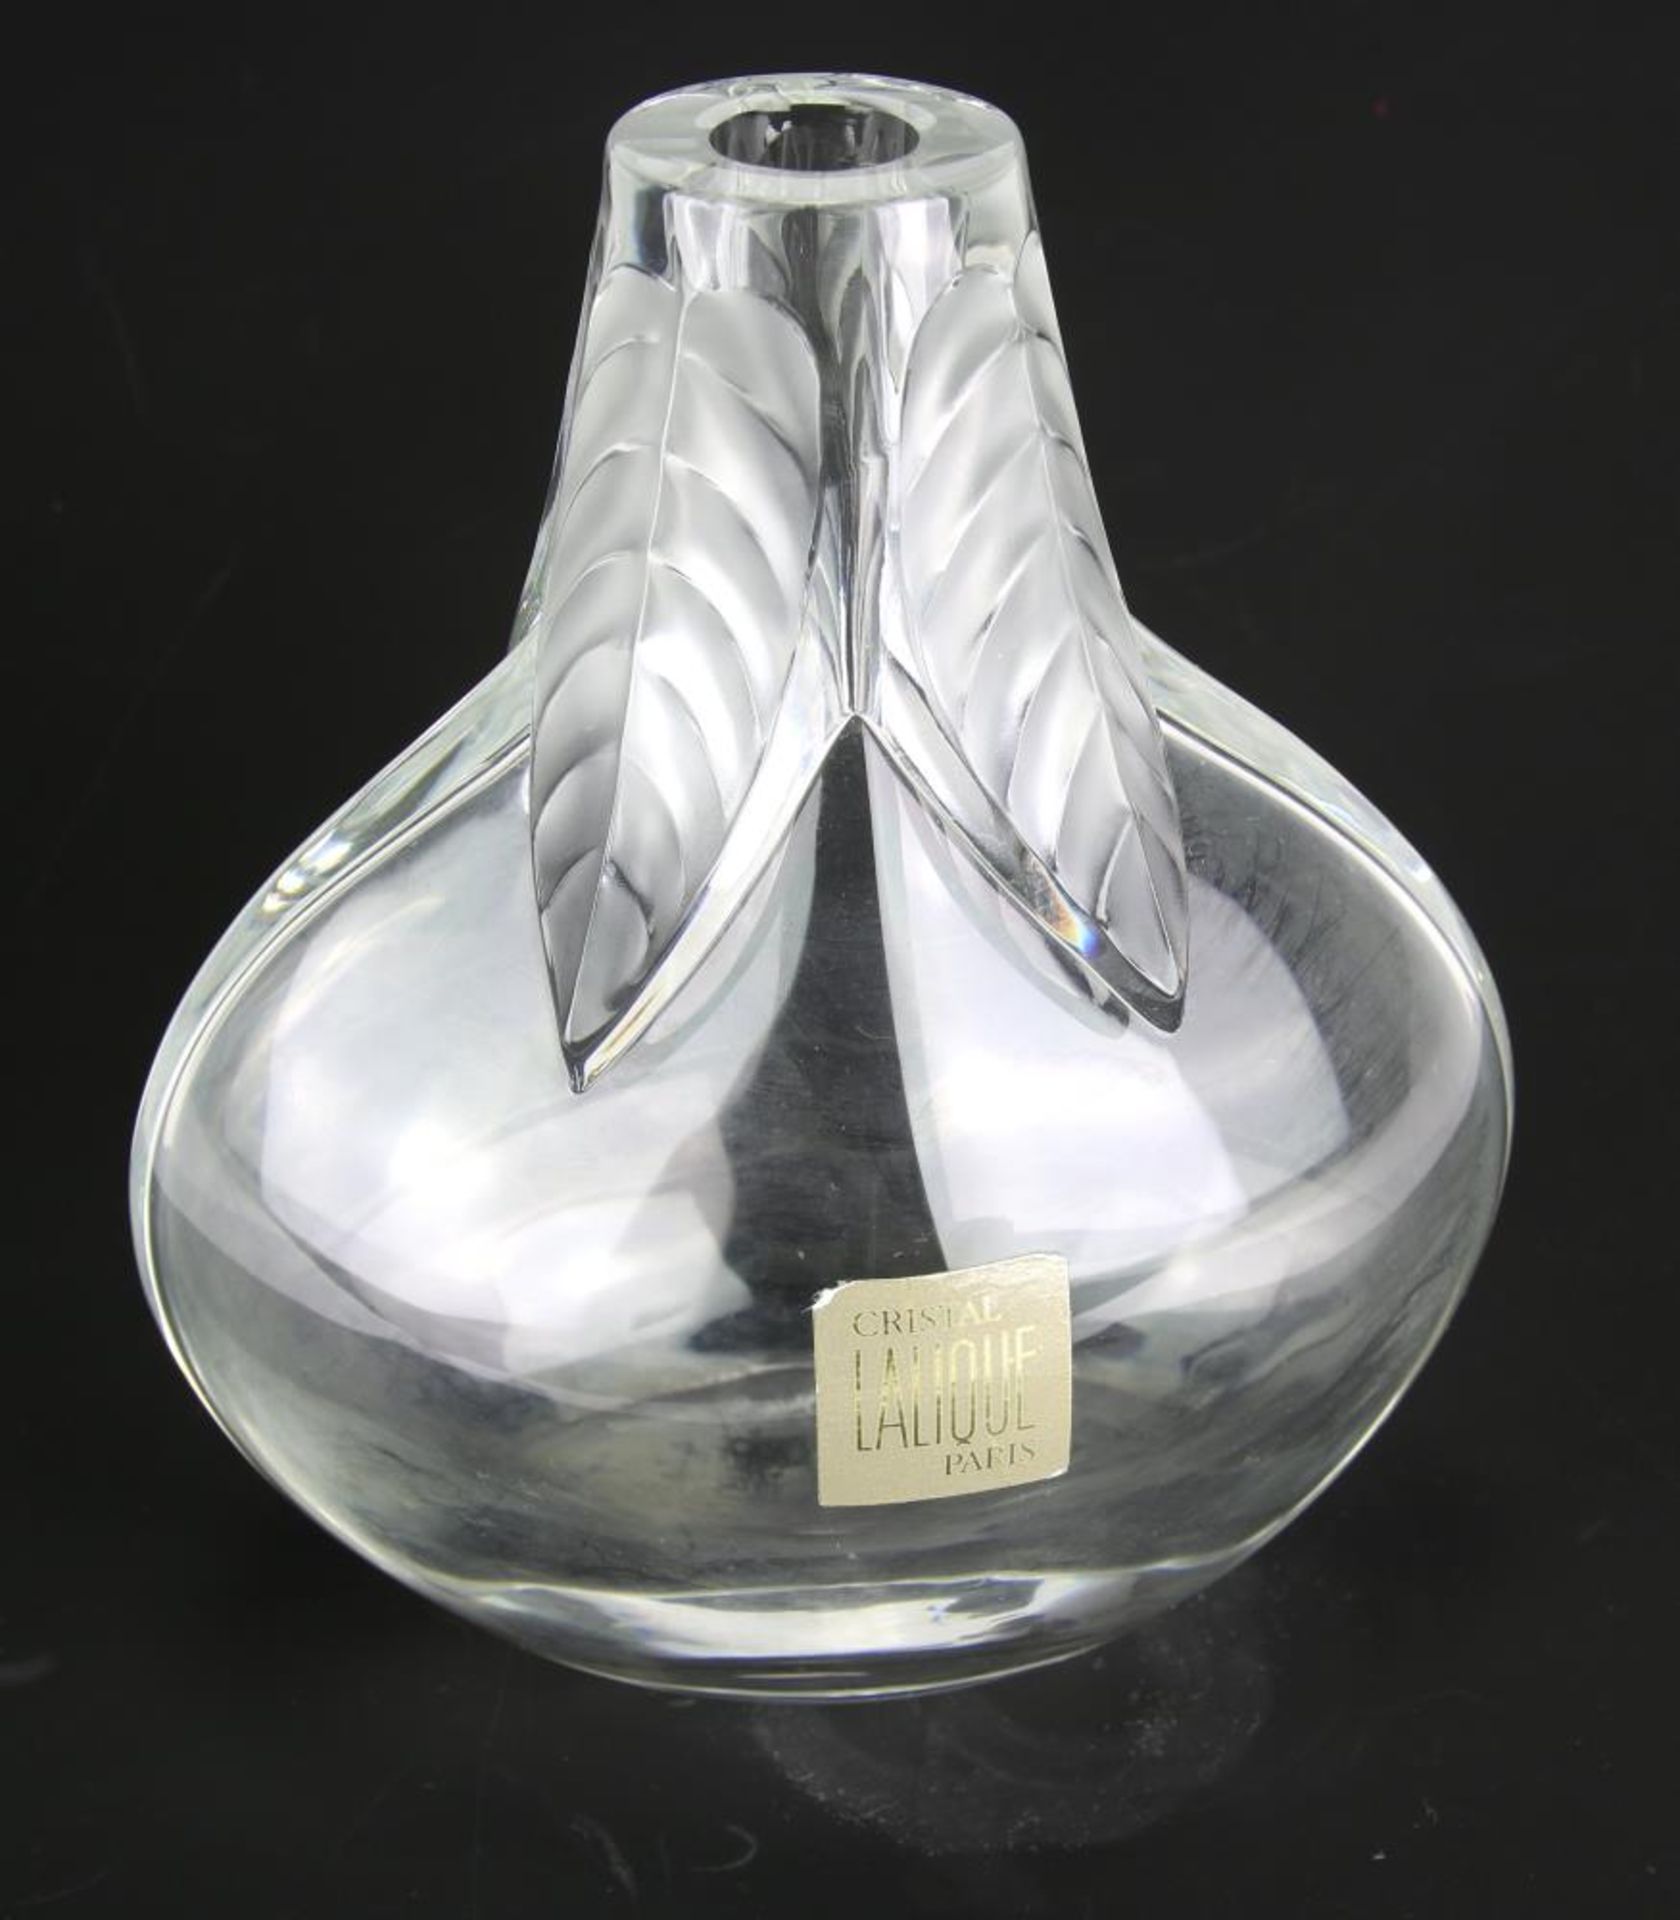 Lalique Vase. Frankreich. Glas. Den Hals der bauchigen Vase schmücken mattierte Blätter. Unter dem